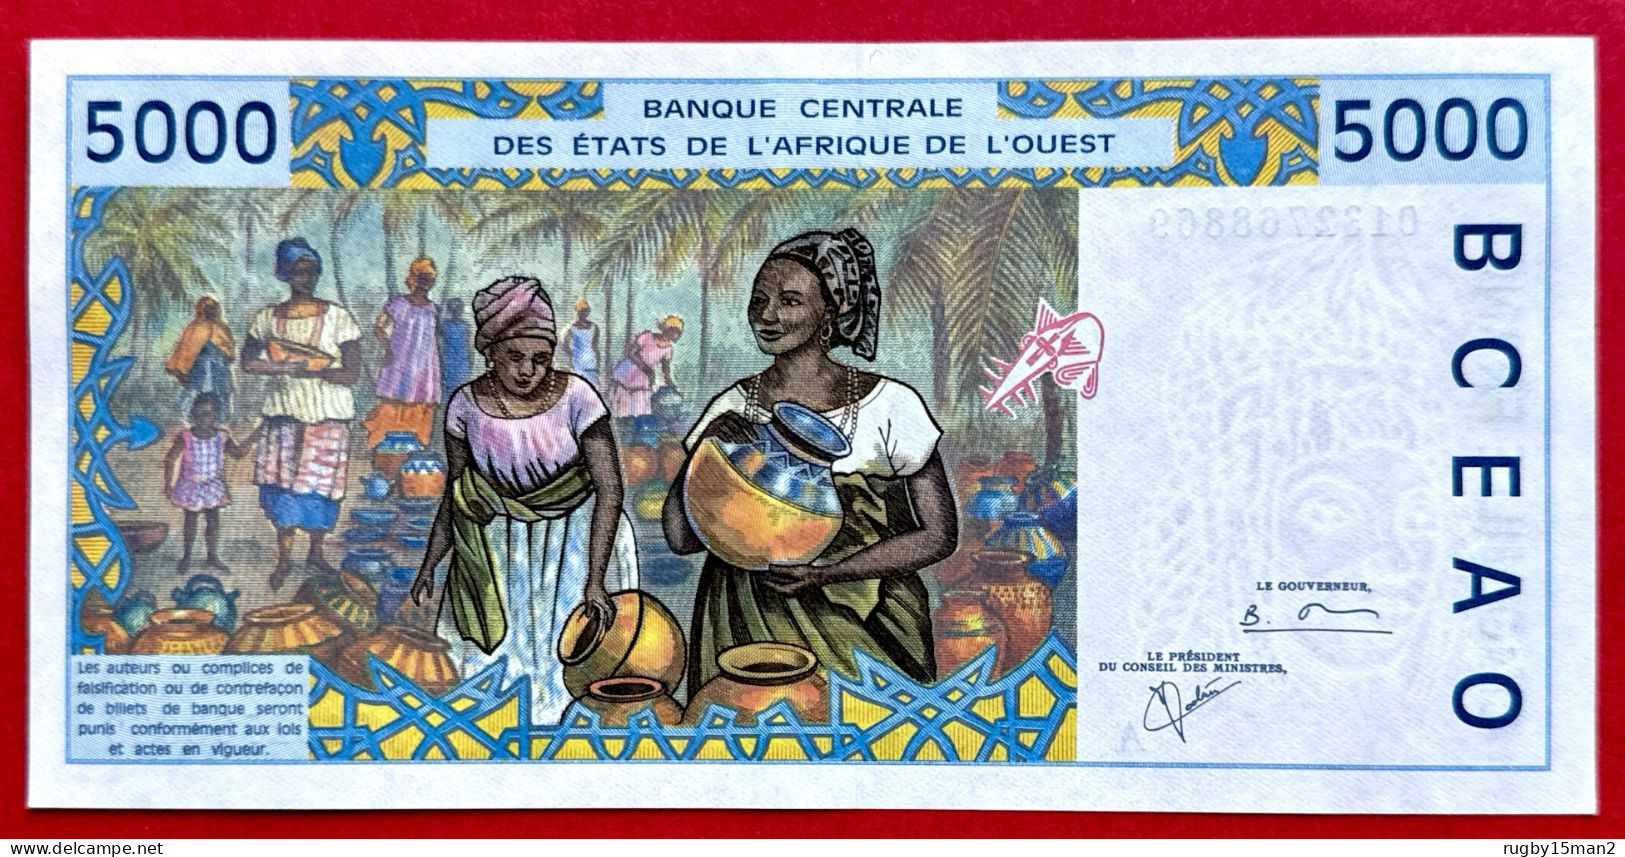 N°81 BILLET DE BANQUE DE 5000 FRANCS CÔTE D'IVOIRE 2001 Pr NEUF / AUNC - Côte D'Ivoire